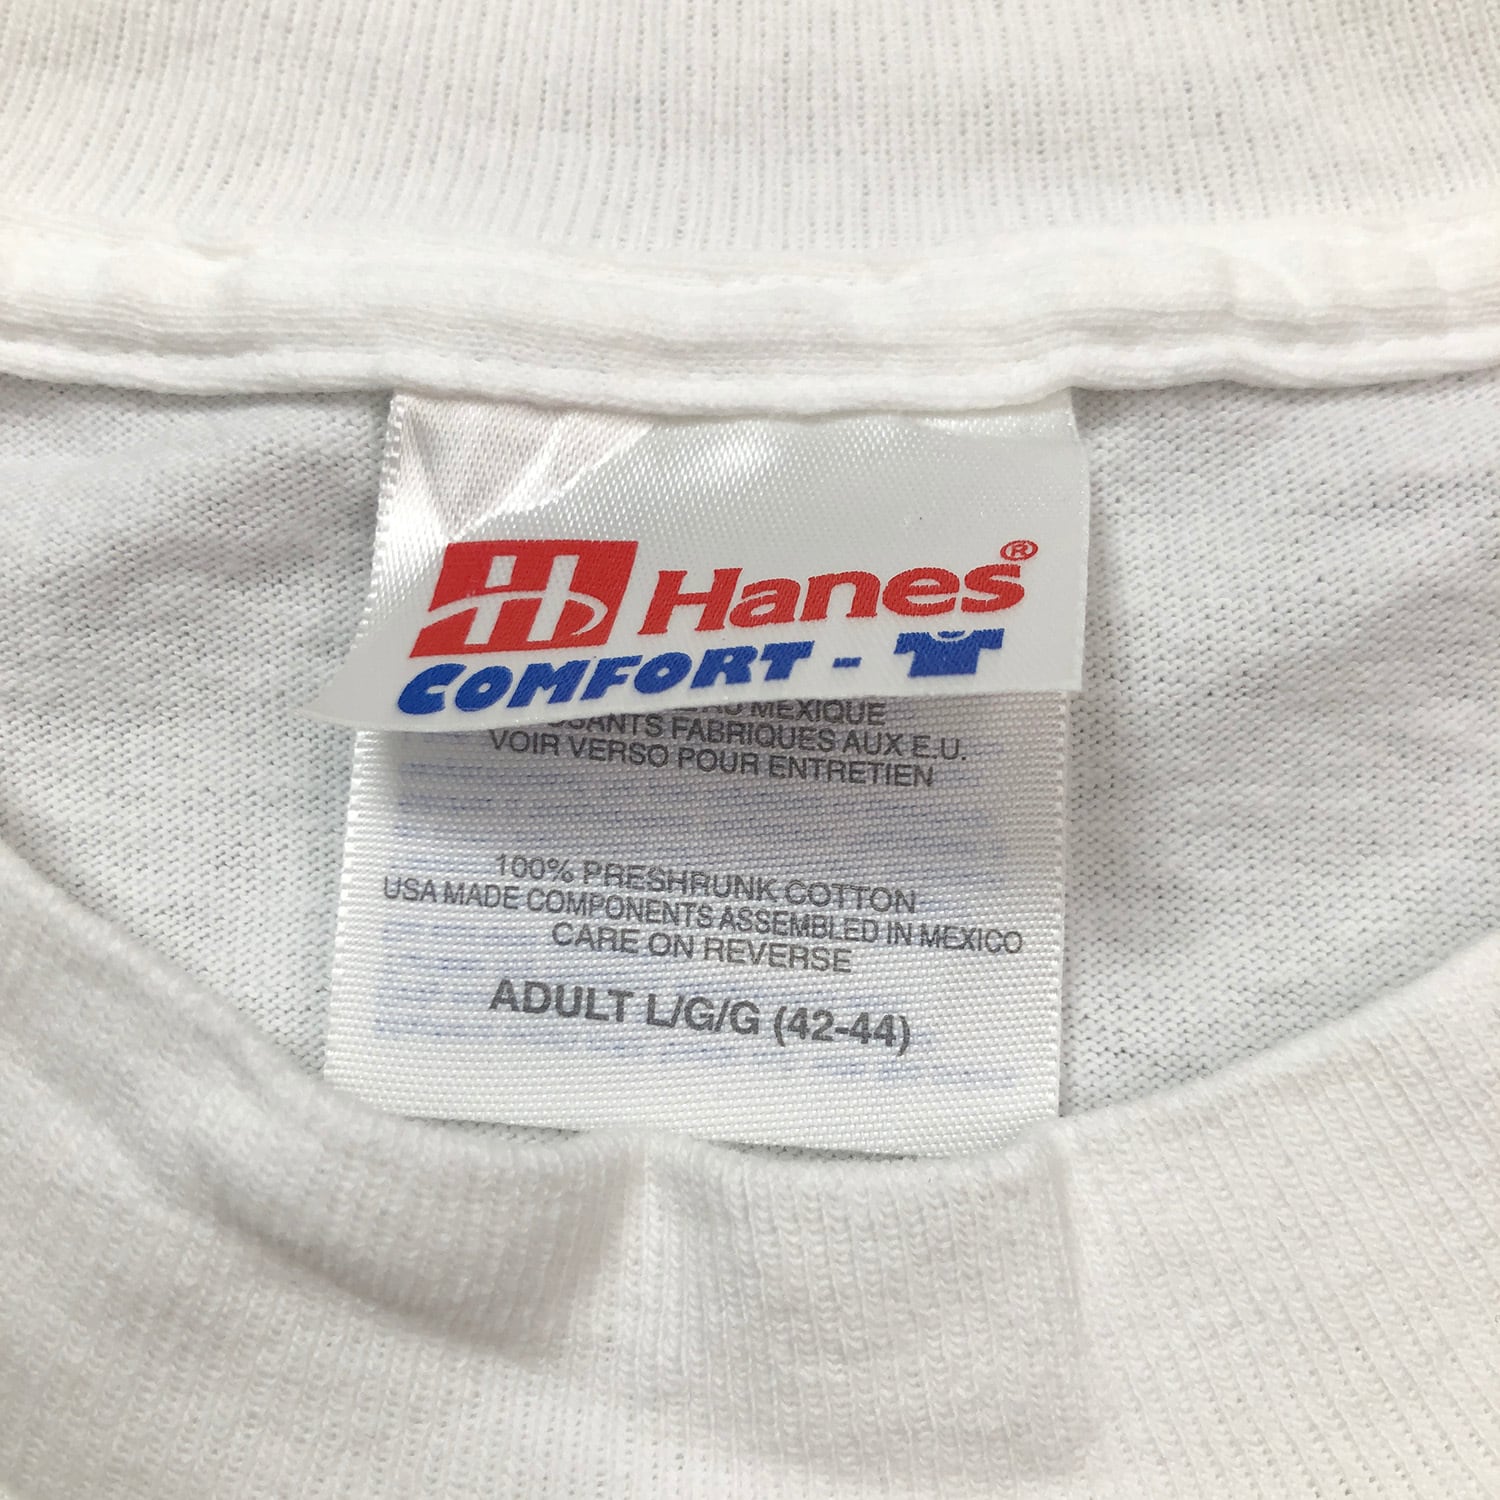 【希少】90s ヘインズ 厚手 USA製 Hiking プリント Tシャツ 半袖